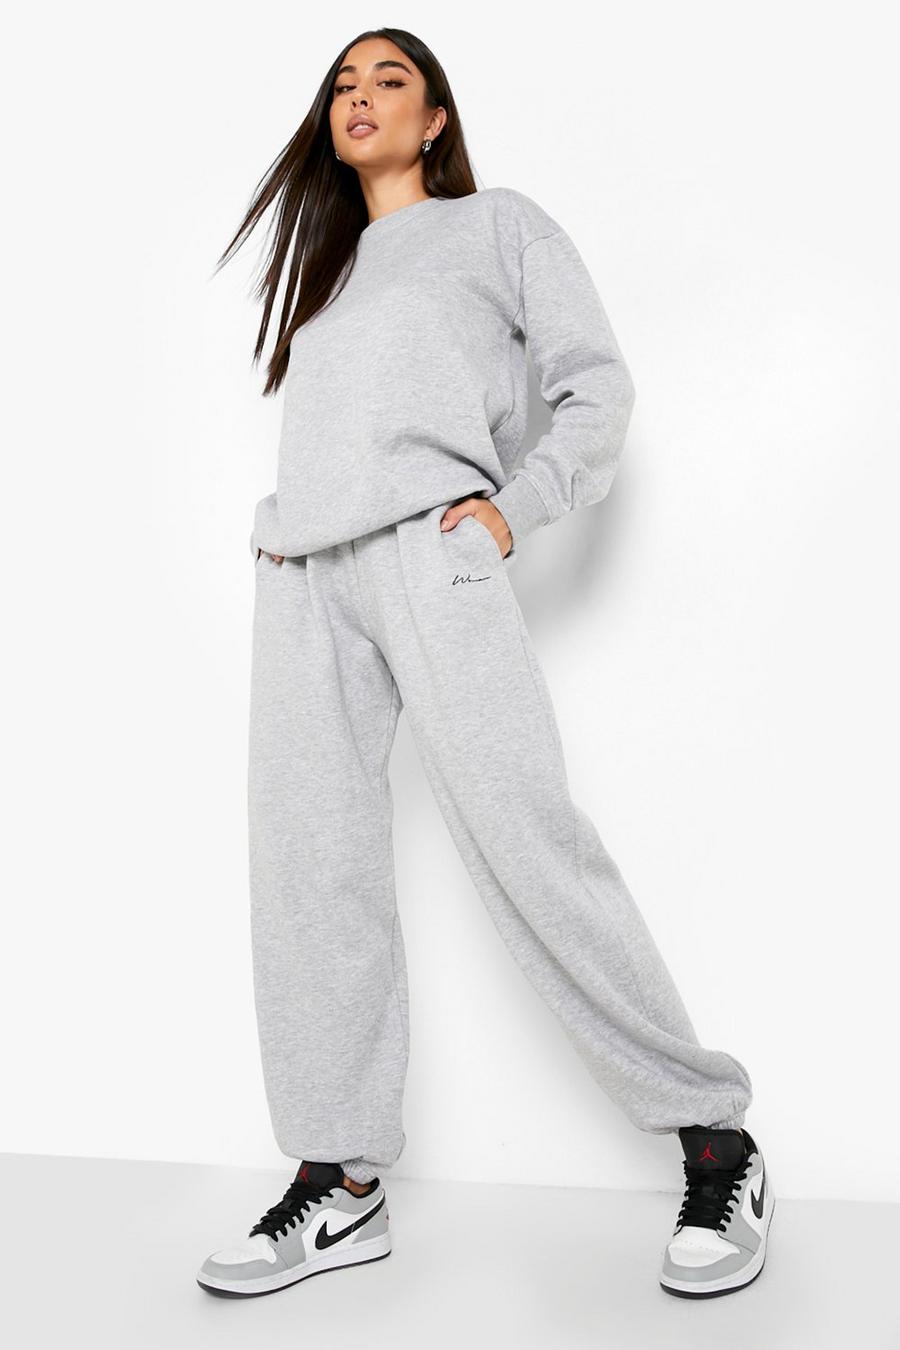 Pantalón deportivo Woman oversize reciclado, Grey marl gris image number 1